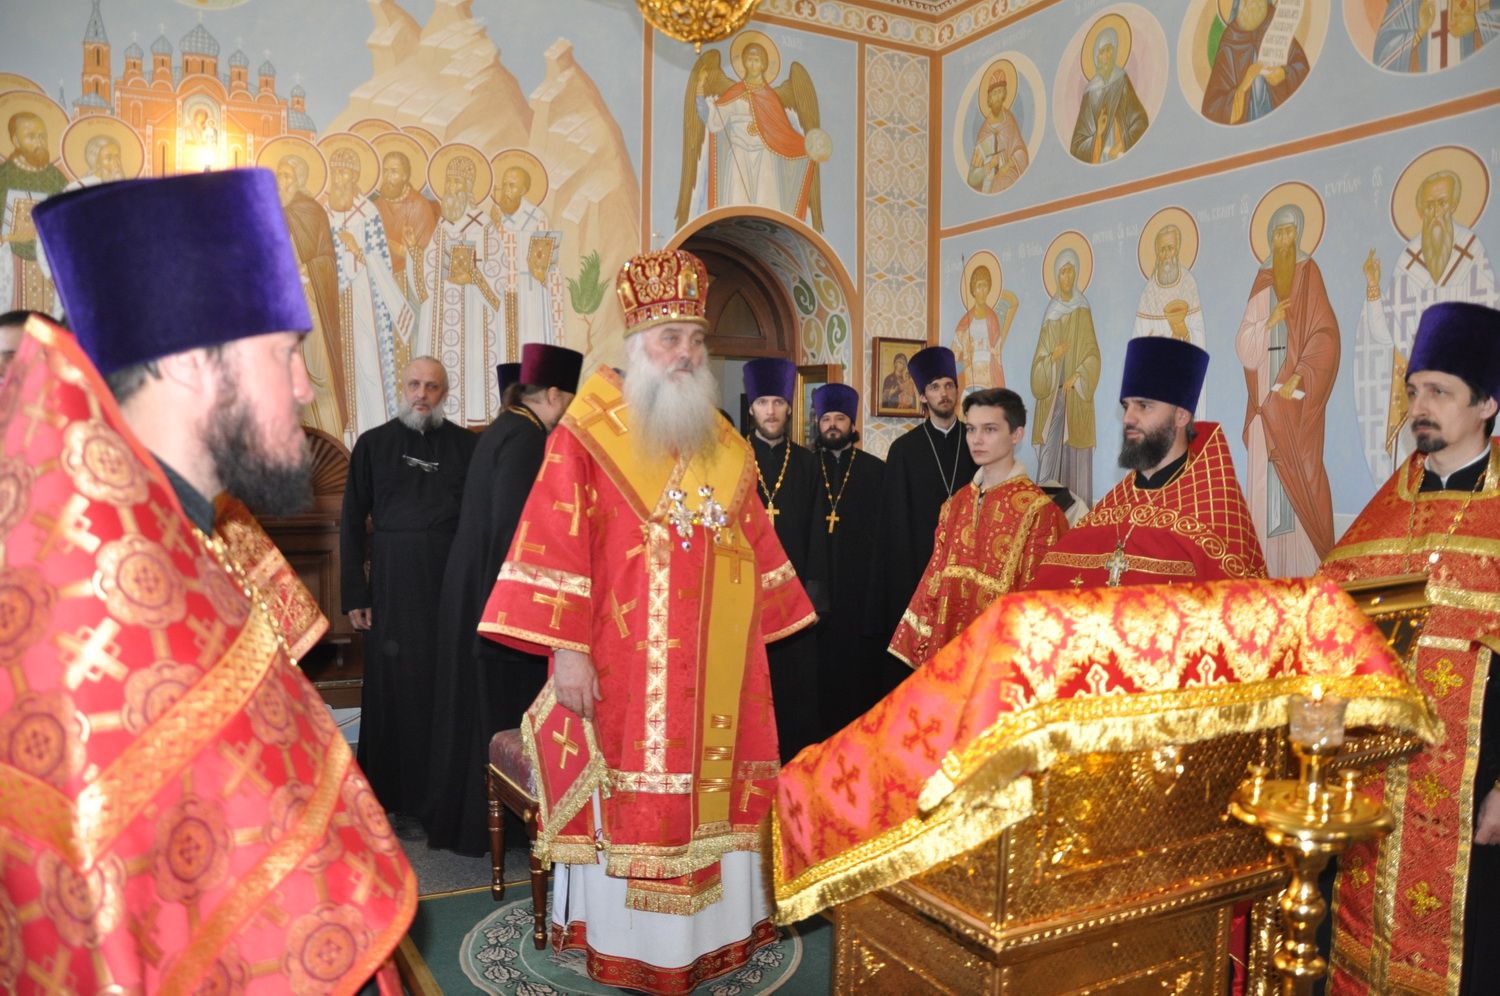 Настоятель Александро-Невского собора протоиерей Андрей Басов сослужил Митрополиту Сергию пасхальную великую вечерню